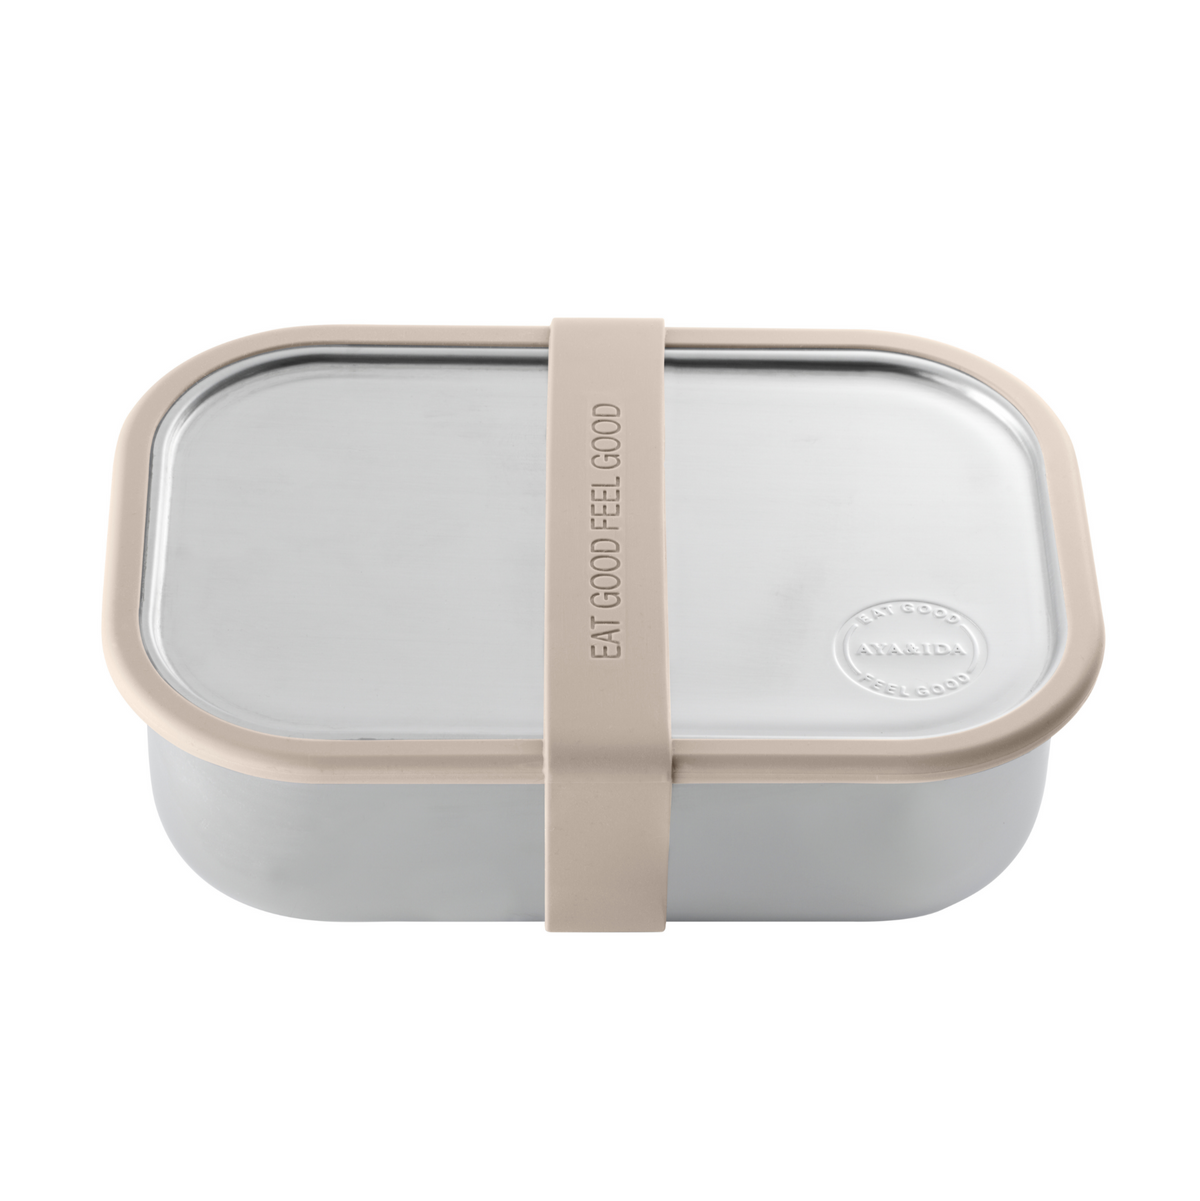 Lunch Box - Cream Beige - 1000ML